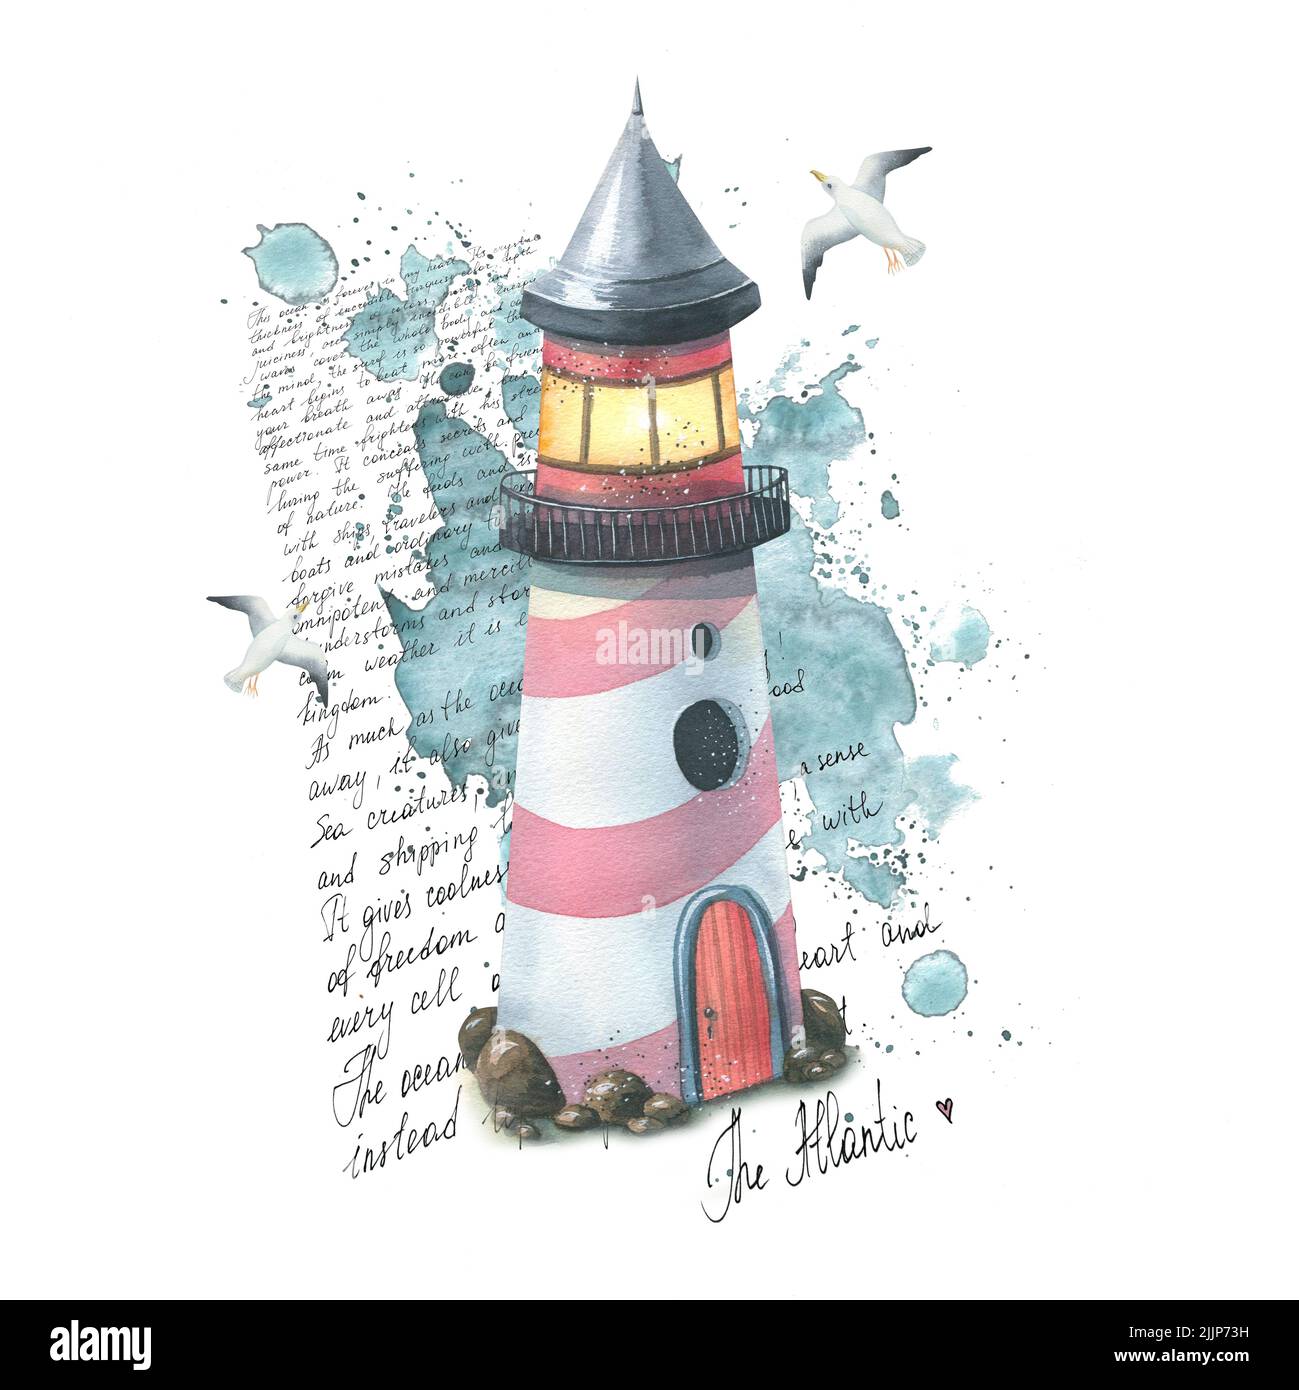 Un phare marin sur un fond de taches et d'éclaboussures d'aquarelle, des lettres en anglais sur l'Atlantique, avec des mouettes volantes. Aquarelle Banque D'Images